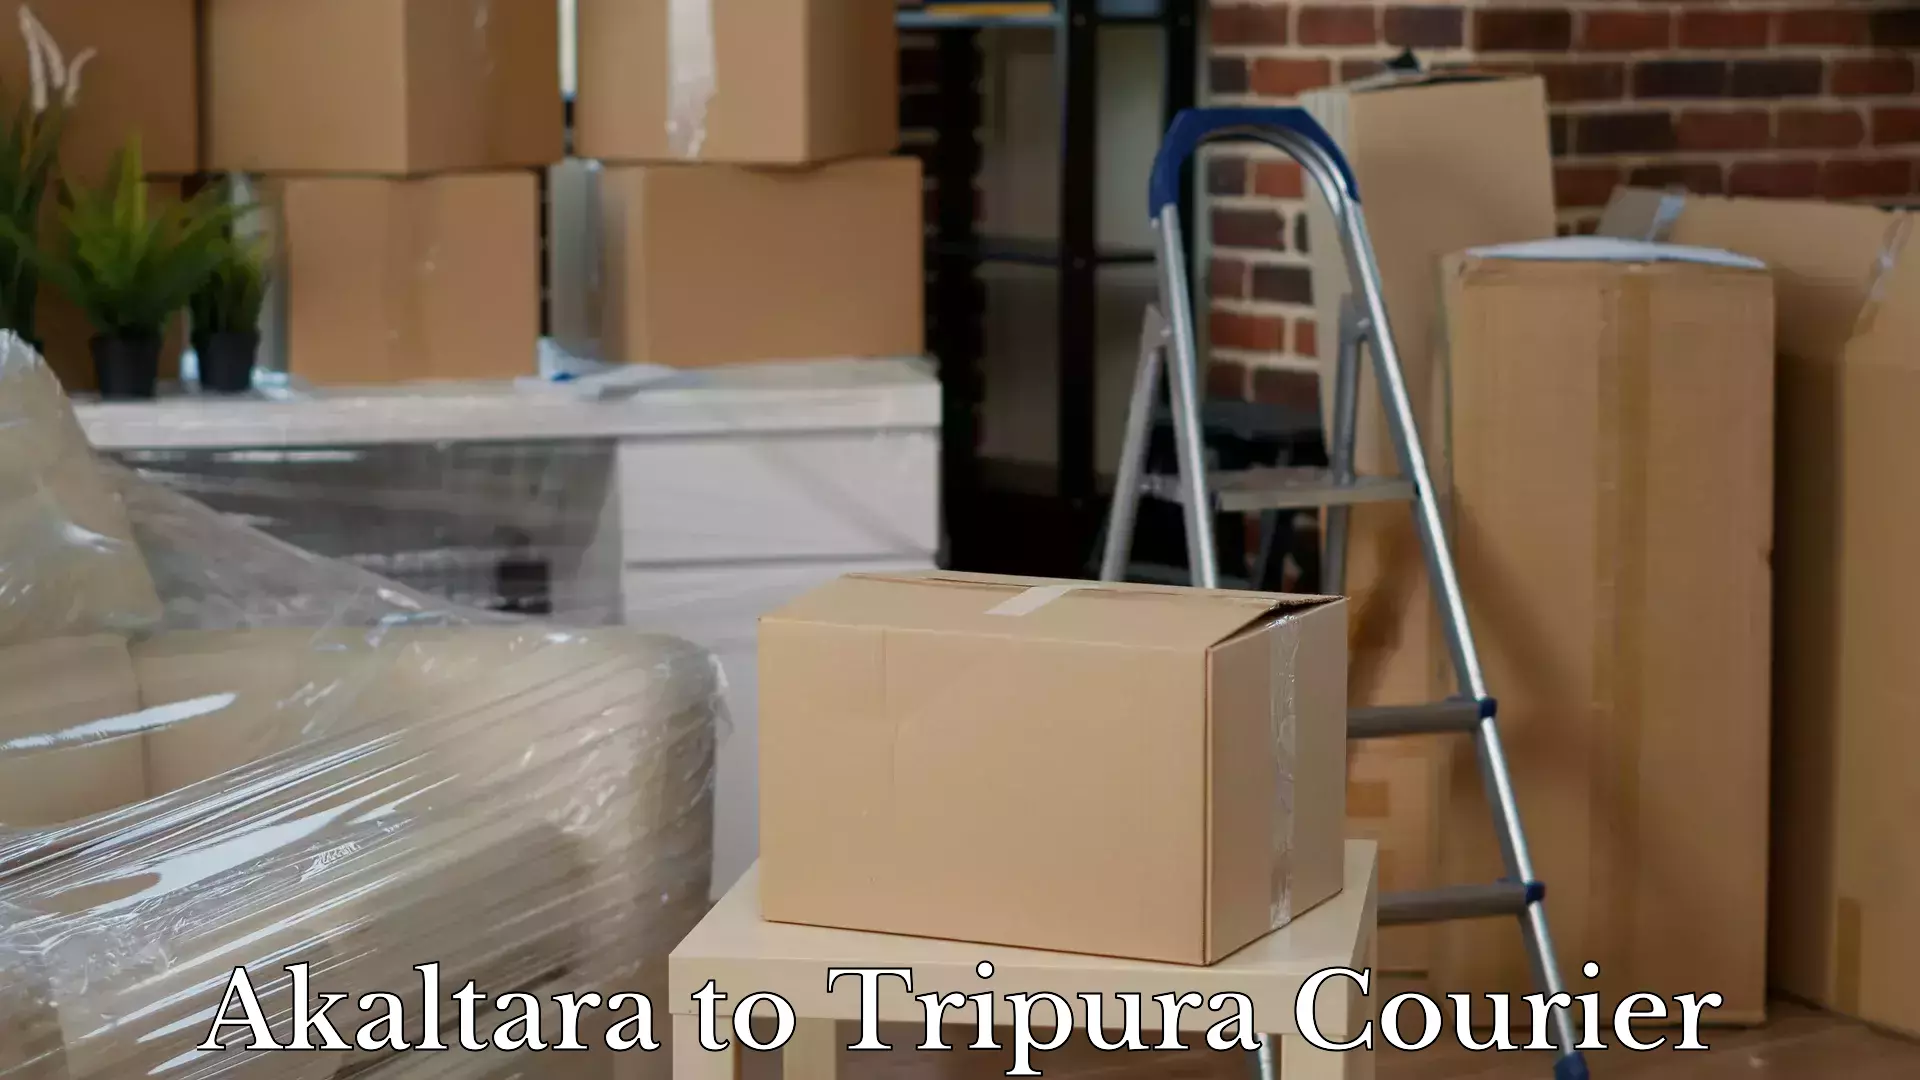 Reliable luggage courier Akaltara to Tripura